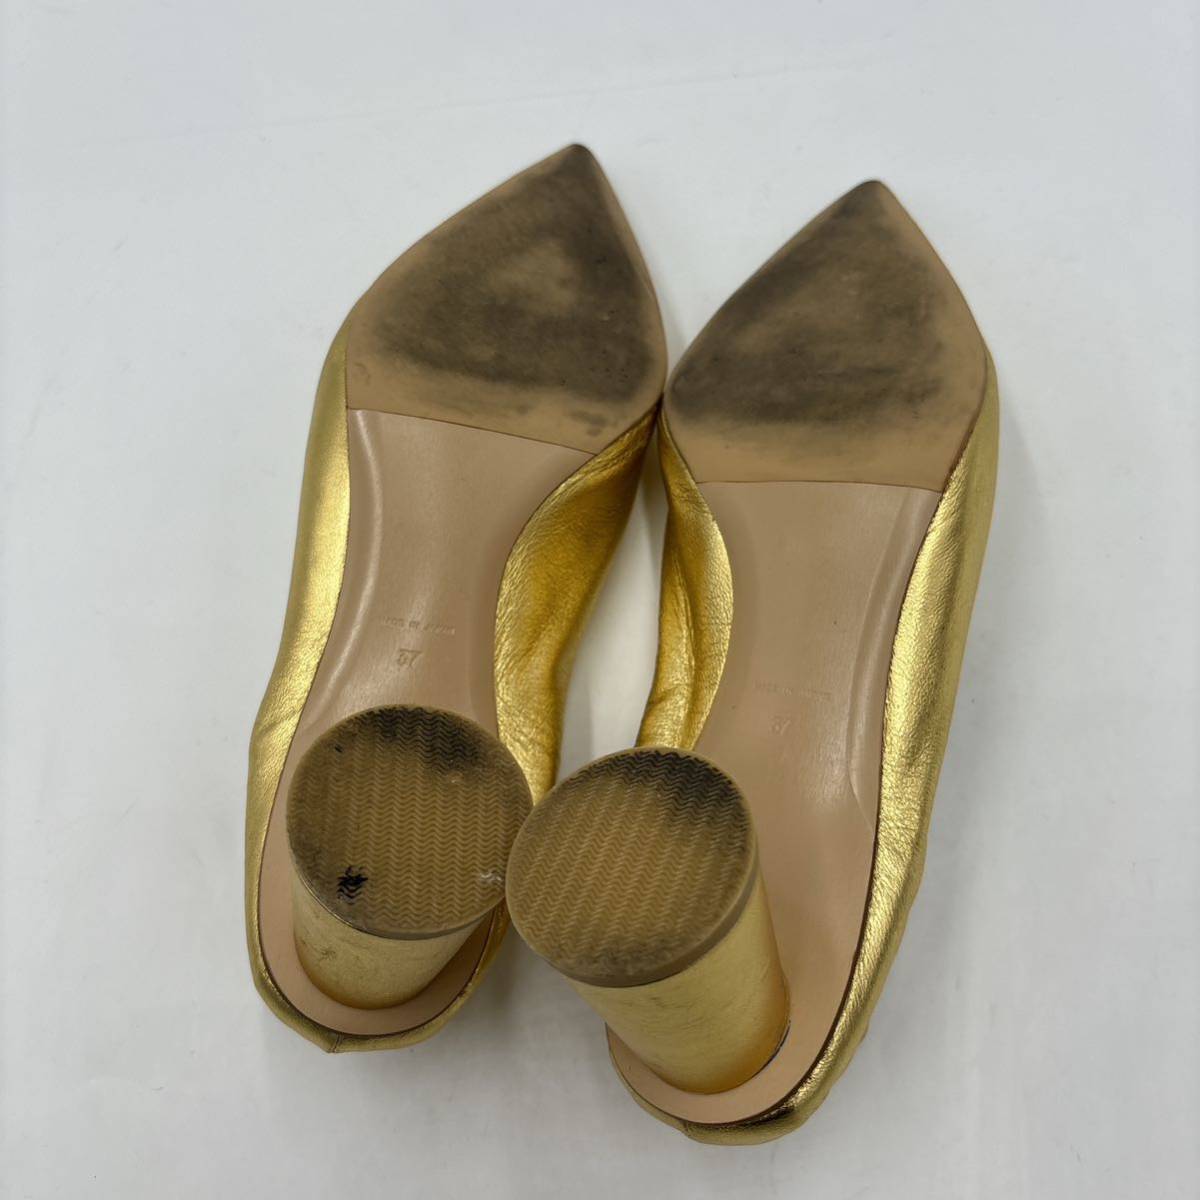 I ＊ 日本製 '高級感溢れる' PIPPICHIC ピッピシック 本革 GOLD ヒール / パンプス EU37 23.5cm レディース 婦人靴 シューズ 金_画像6